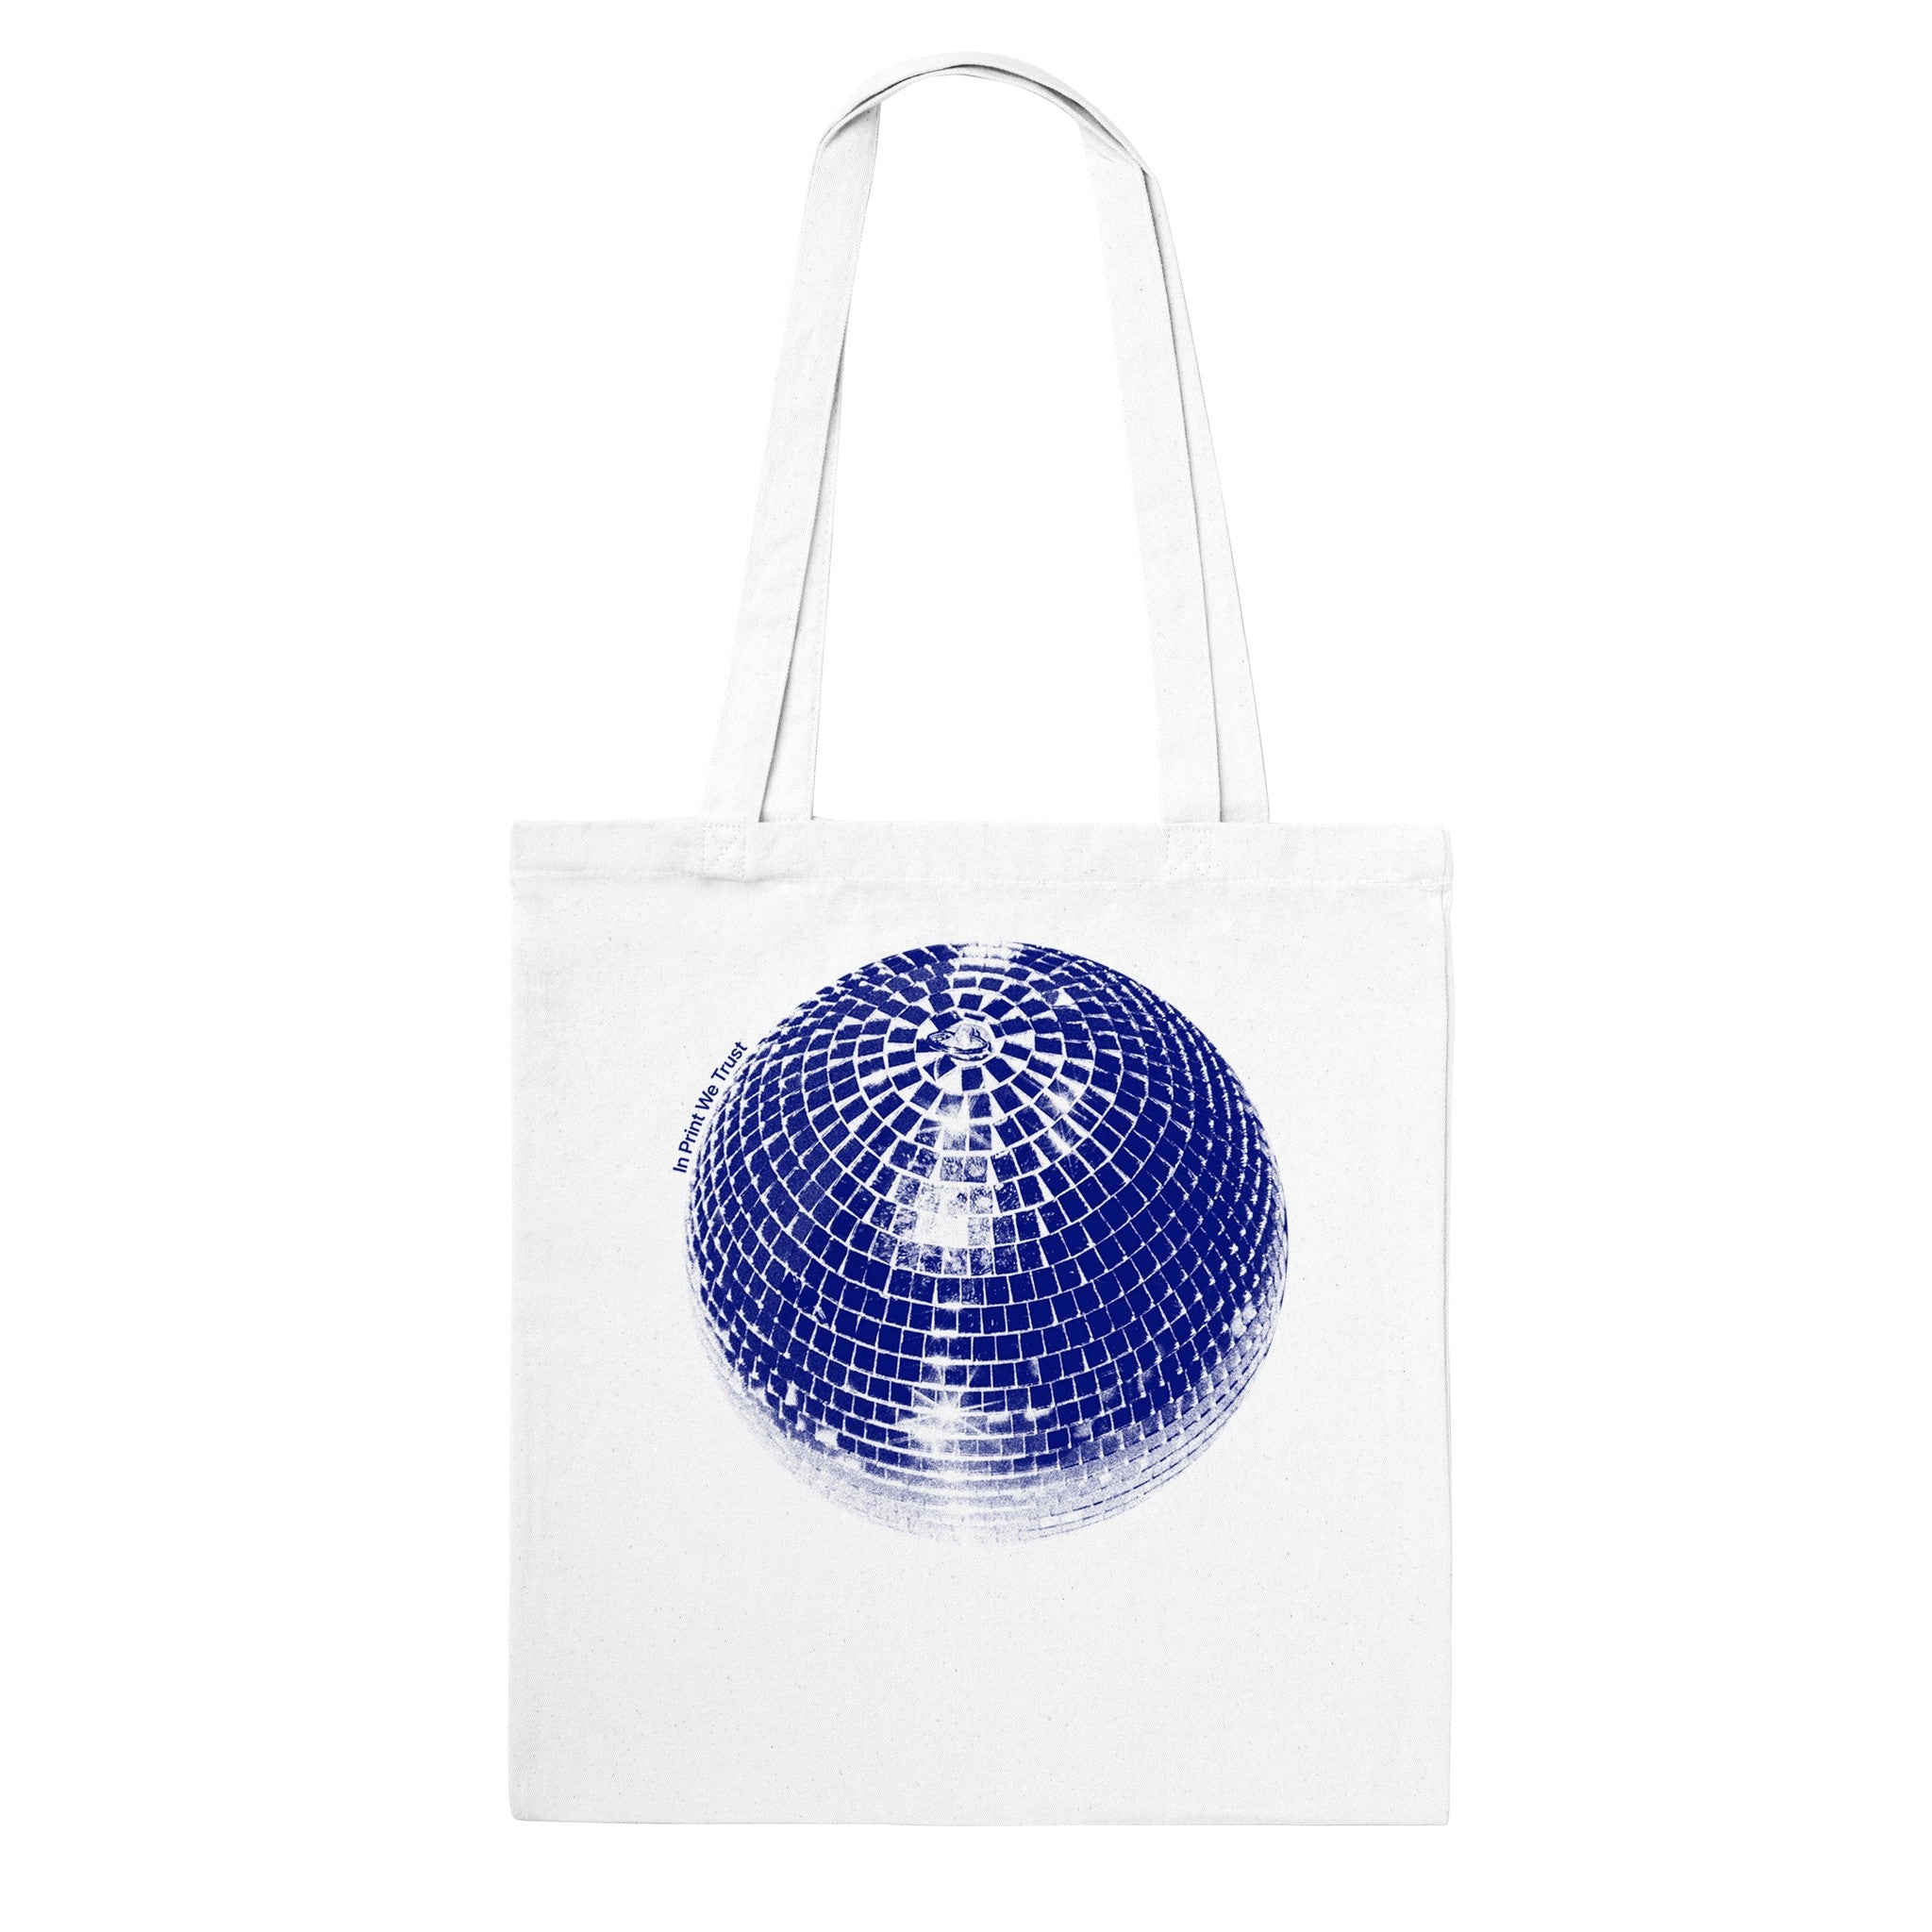 'Studio 54' tote bag - In Print We Trust